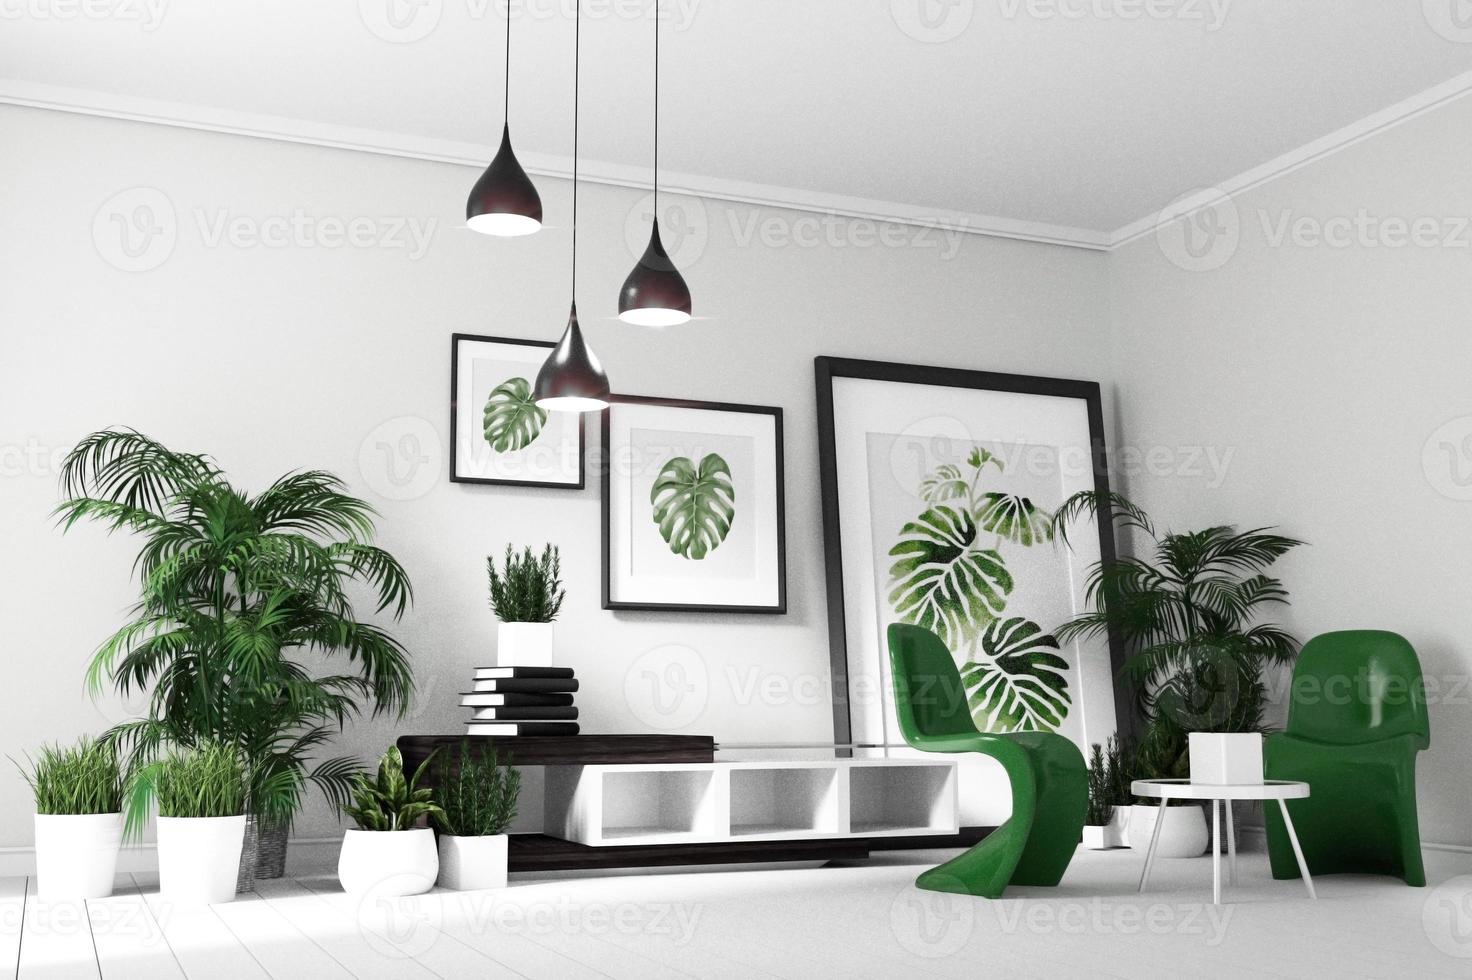 interior escandinavo da sala de estar - quarto em estilo tropical moderno com composição - design minimalista. Renderização 3d foto